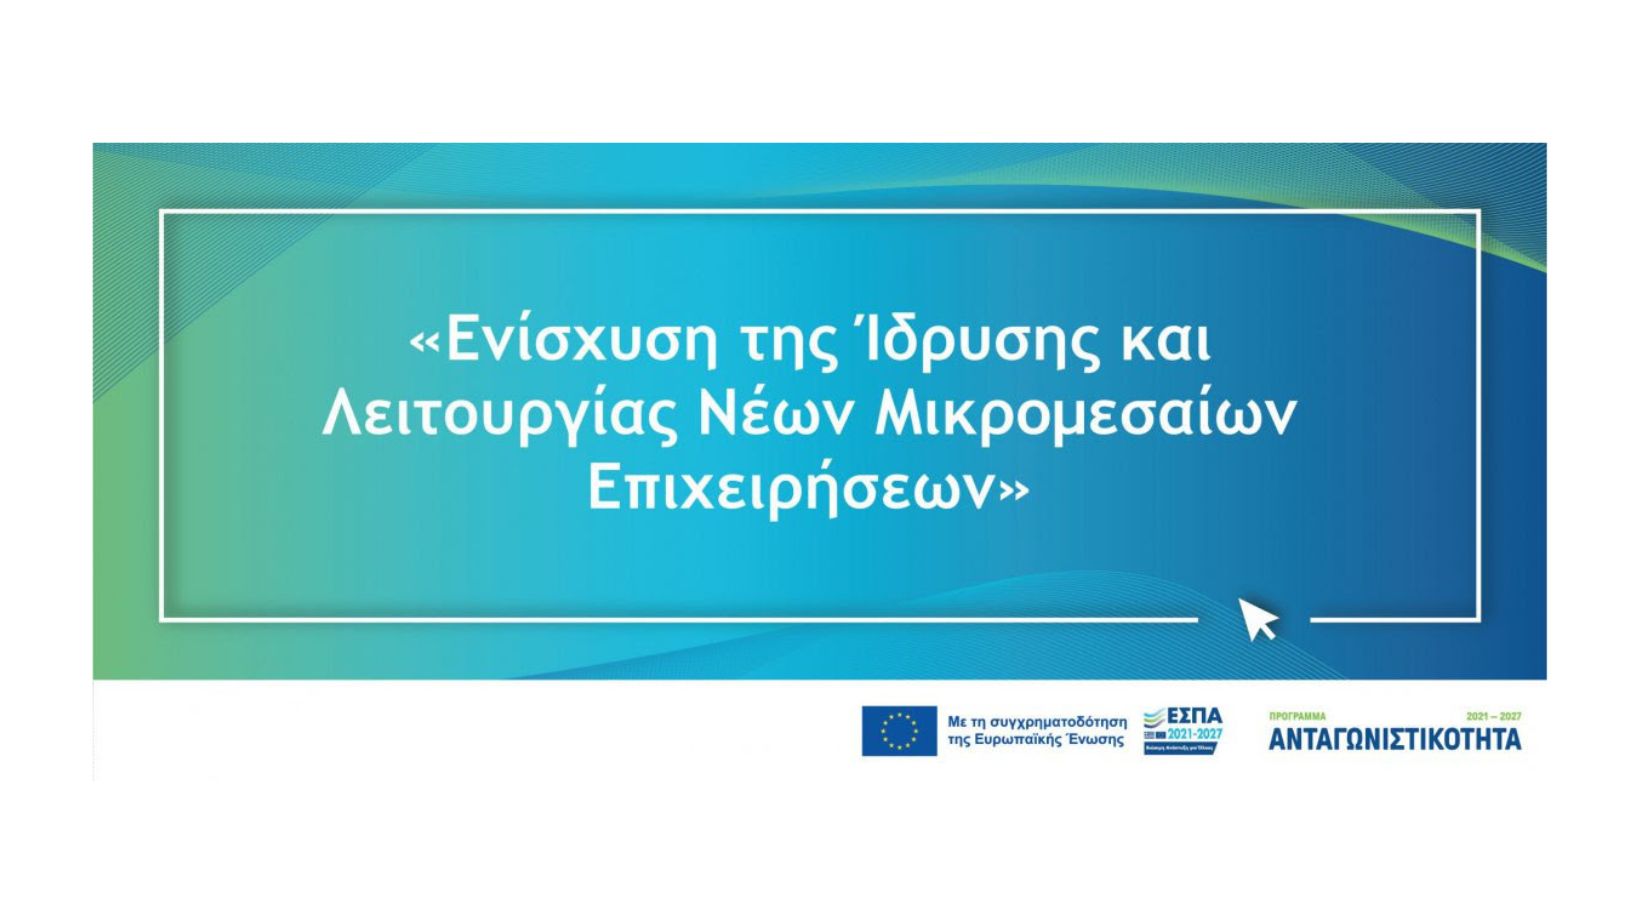 Προδημοσίευση της Δράσης «Ενίσχυση της Ίδρυσης και Λειτουργίας νέων Μικρομεσαίων Επιχειρήσεων»